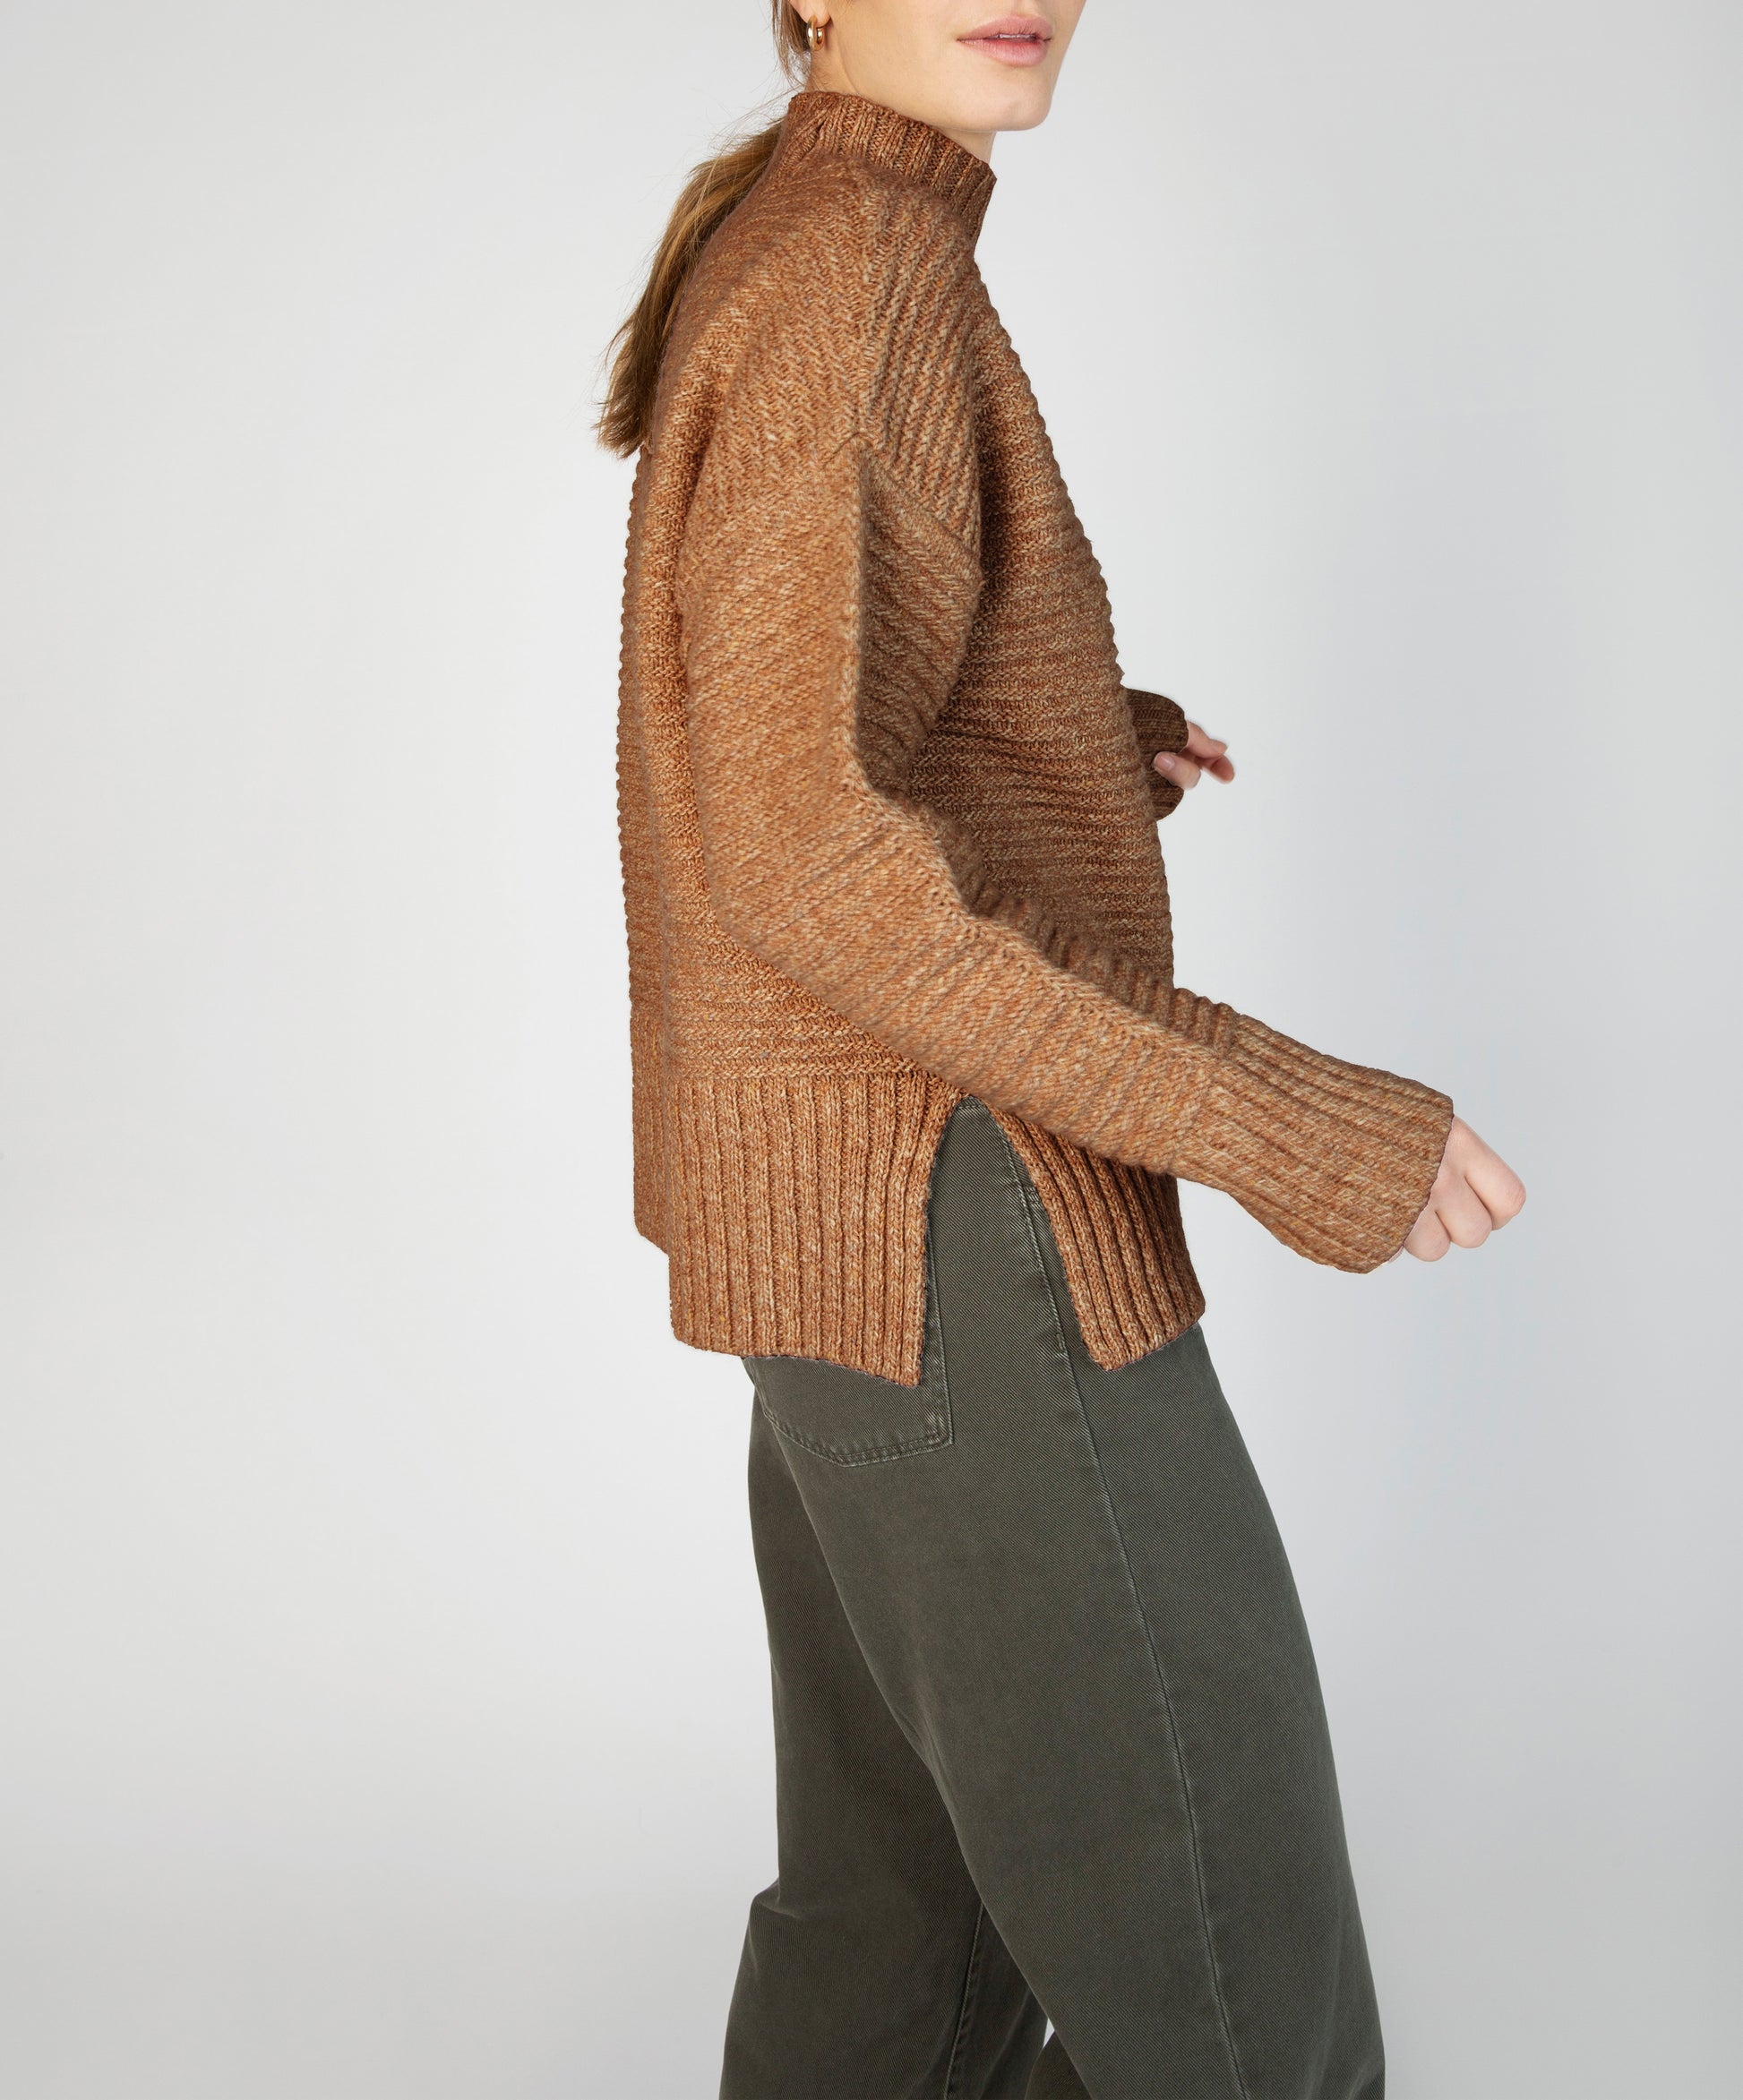 IrelandsEye Knitwear ‘Iris’ Funnel Neck Sweater Biscuit